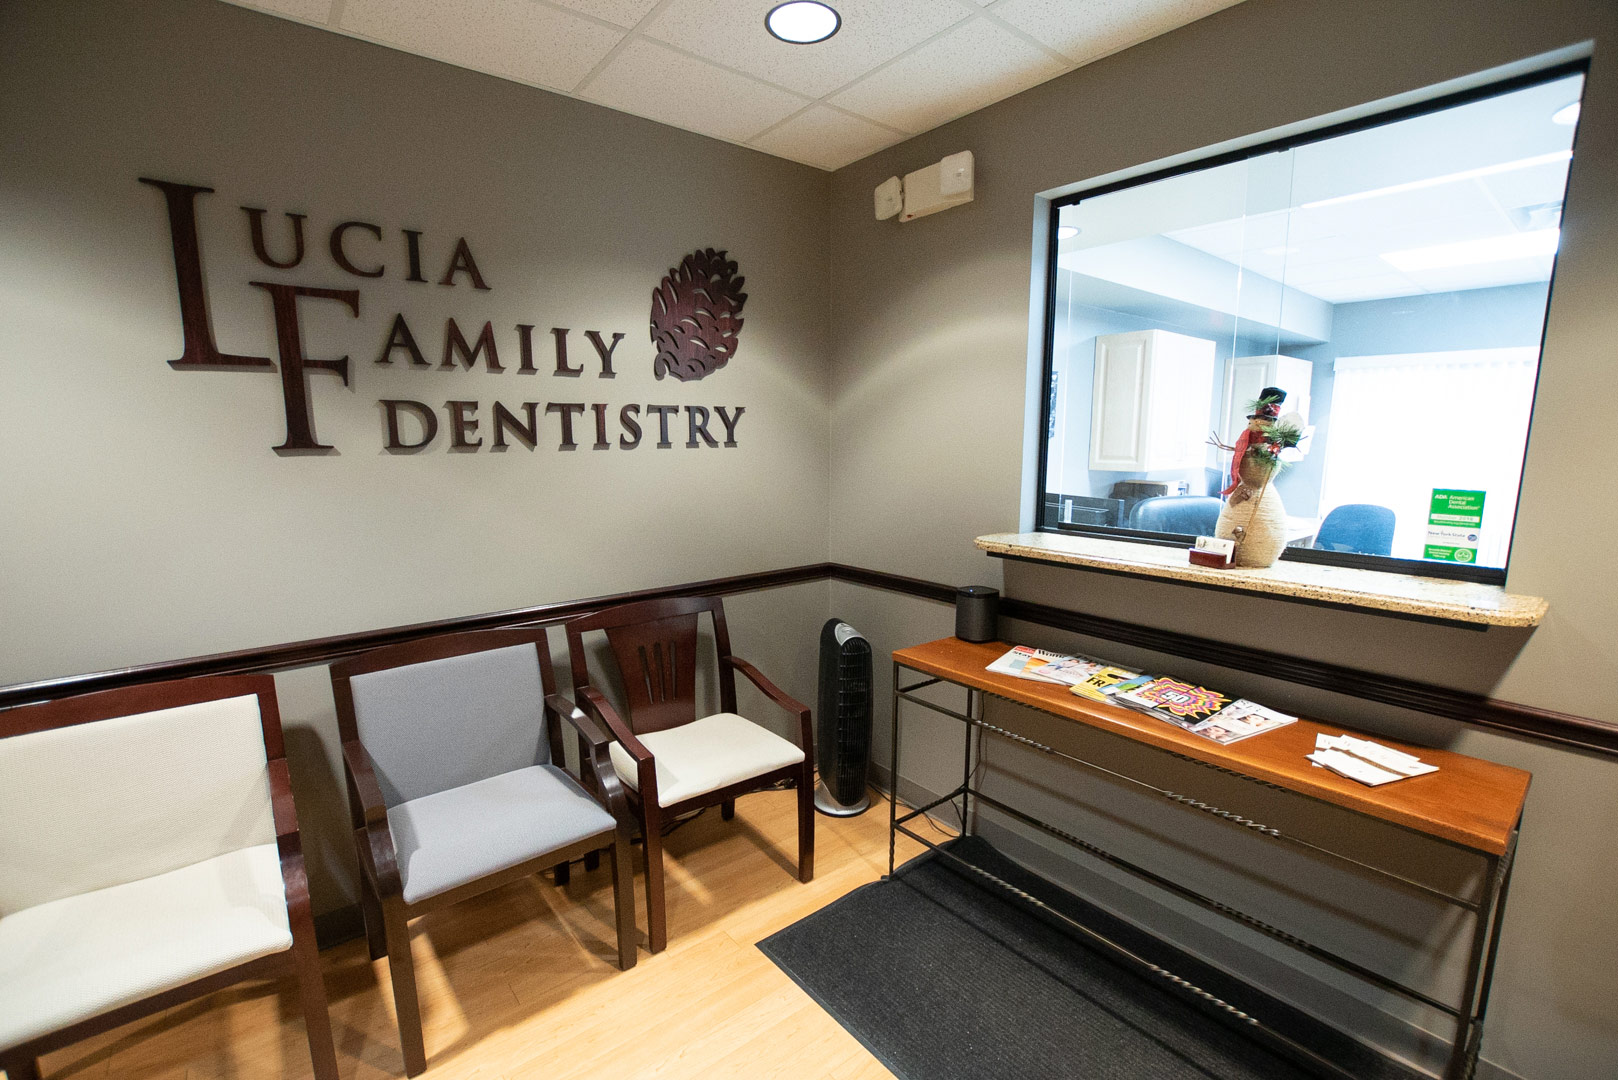 Lucia Family Dentistry: John J. Lucia, DDS, PC